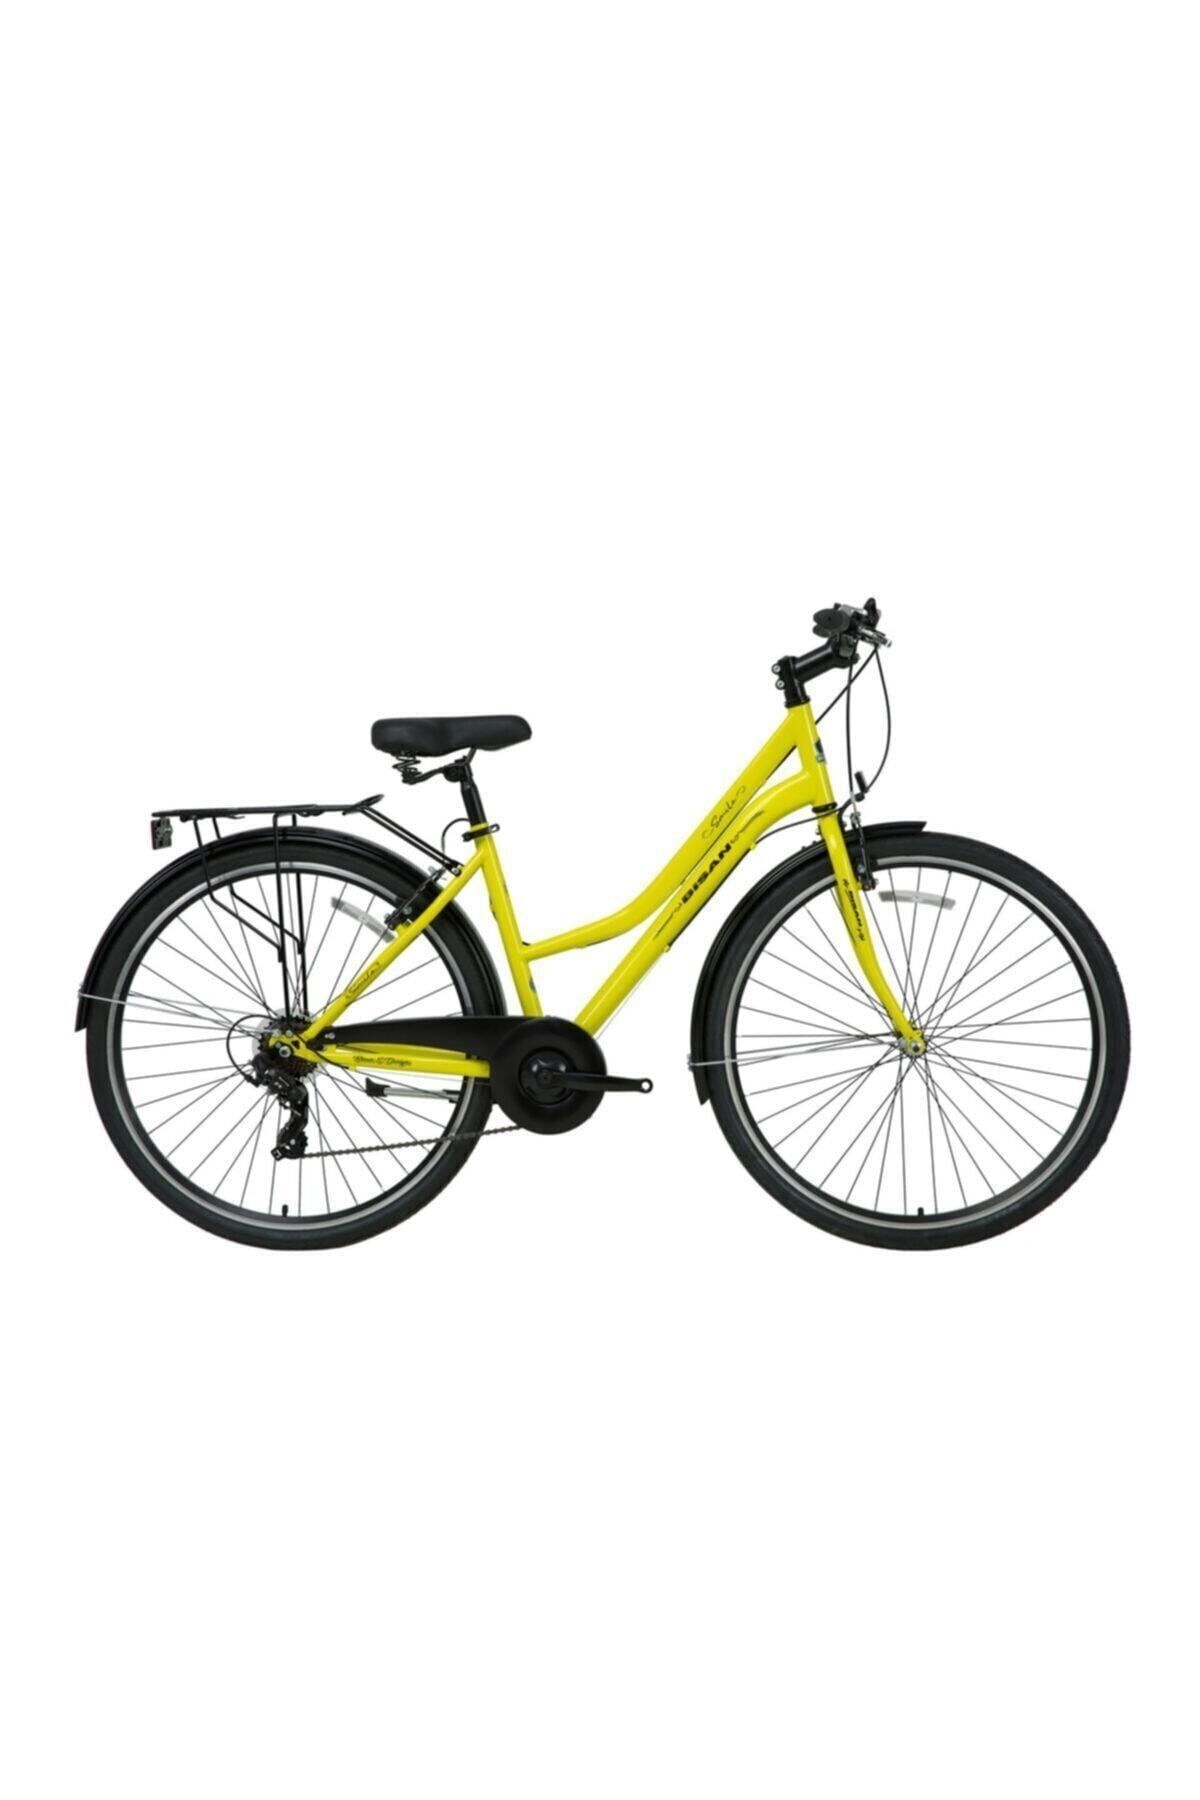 Bisan Smıle Kadın Şehir Bisikleti 42cm V 26 Jant 7 Vites Sarı Siyah